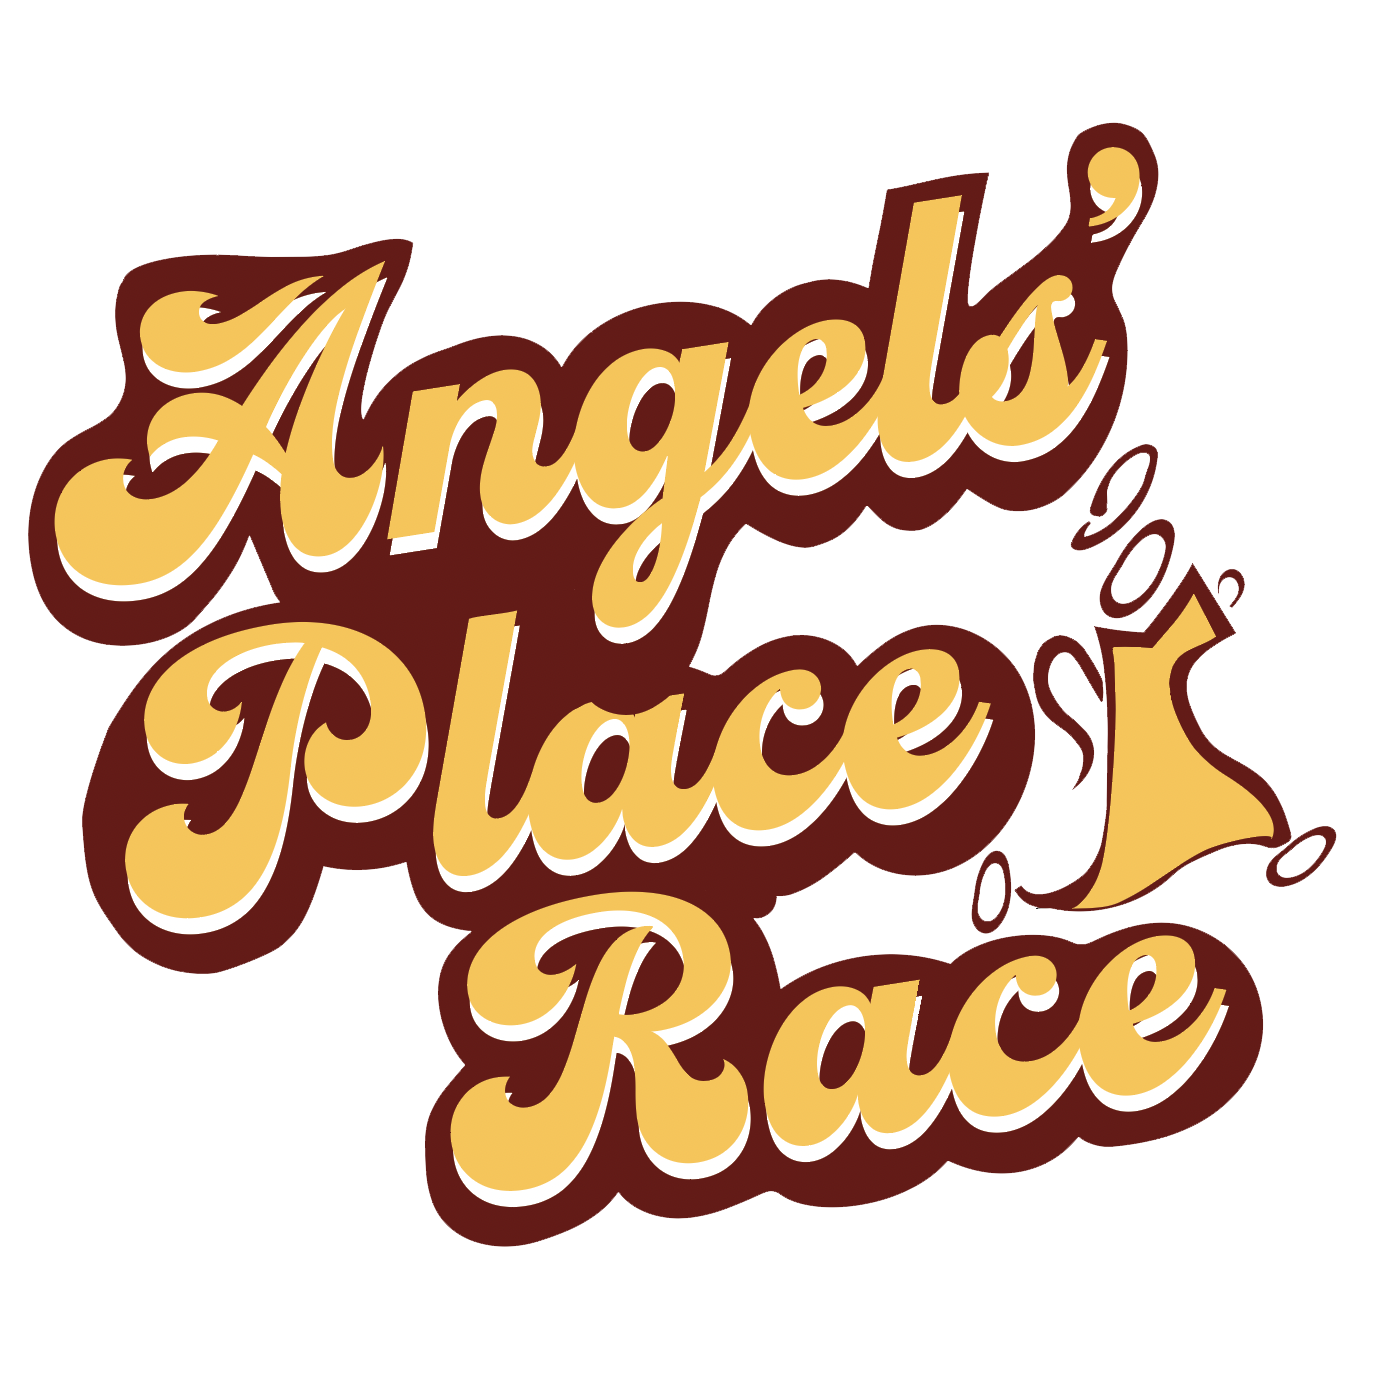 ANGELS' PLACE RACE